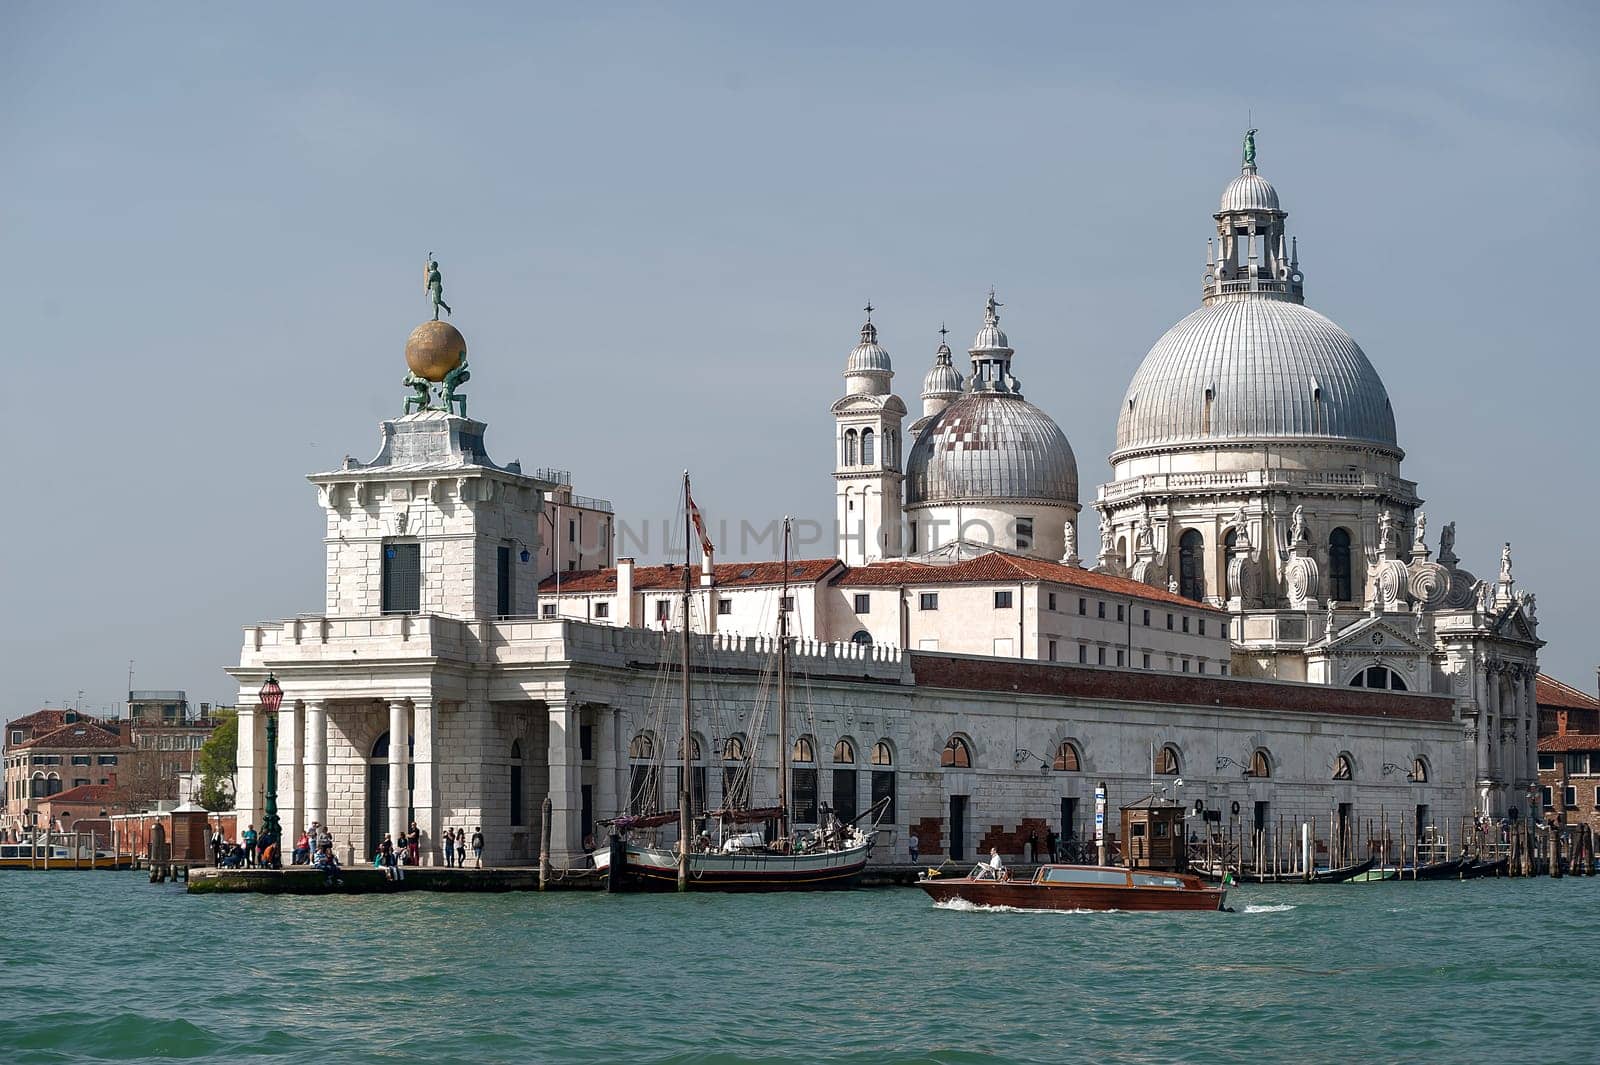 Basilica Santa Maria della Salute in Venice by Giamplume